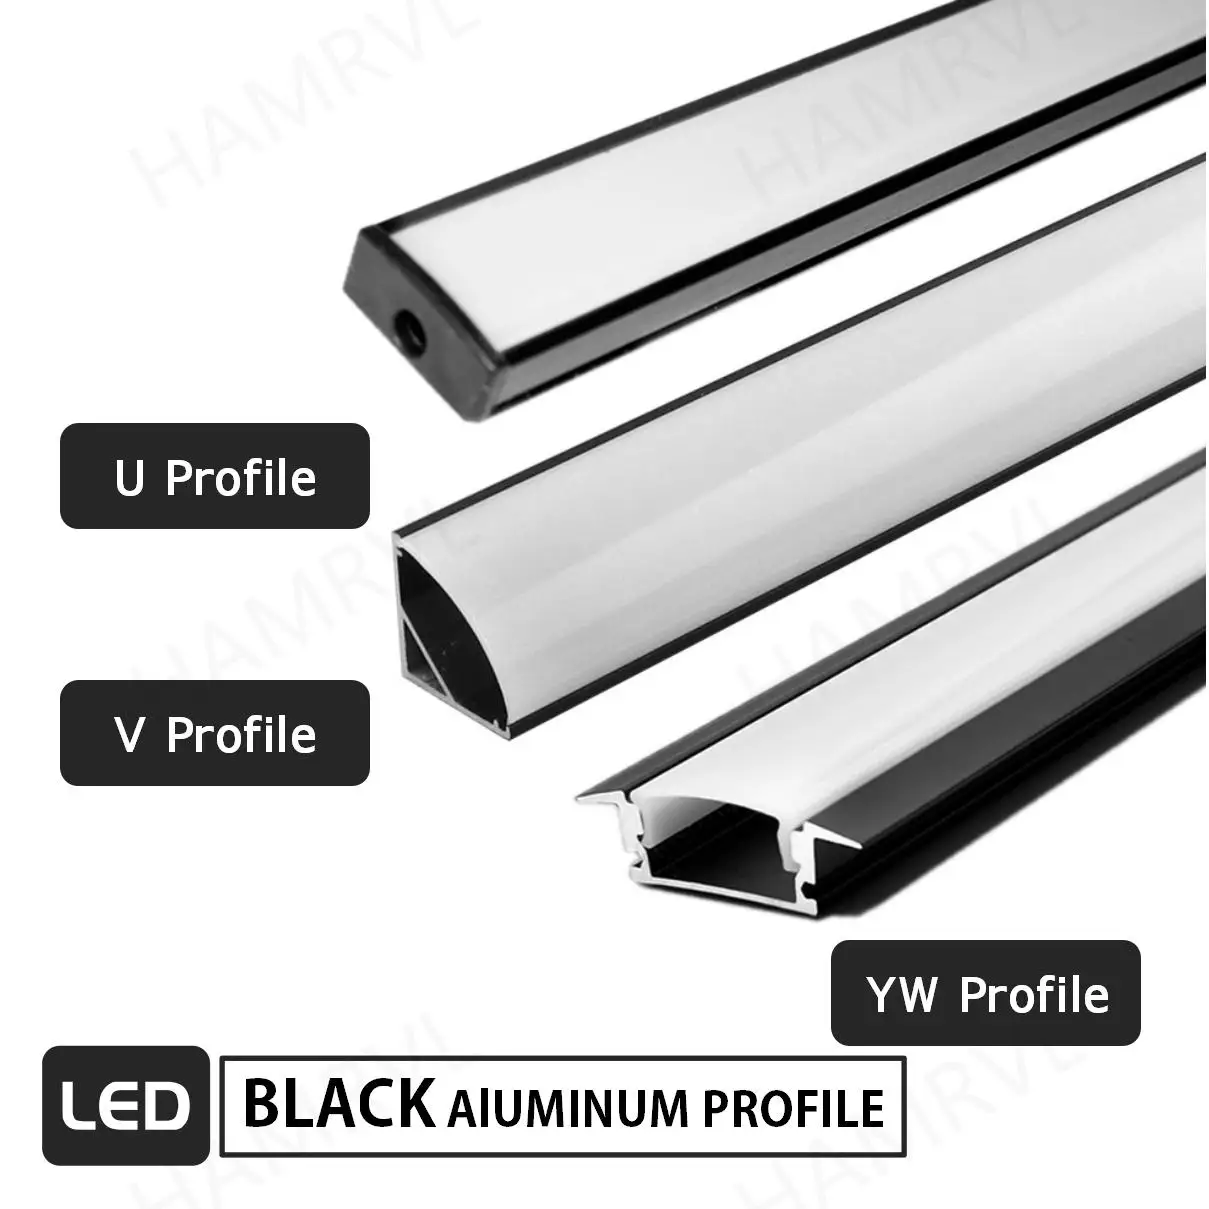 Black V U YW LED Aluminum Profile 50cm For 5050 5630 Corner Channel Case Holder Milky Cover Cabinet Closet LED Bar Strip Lights